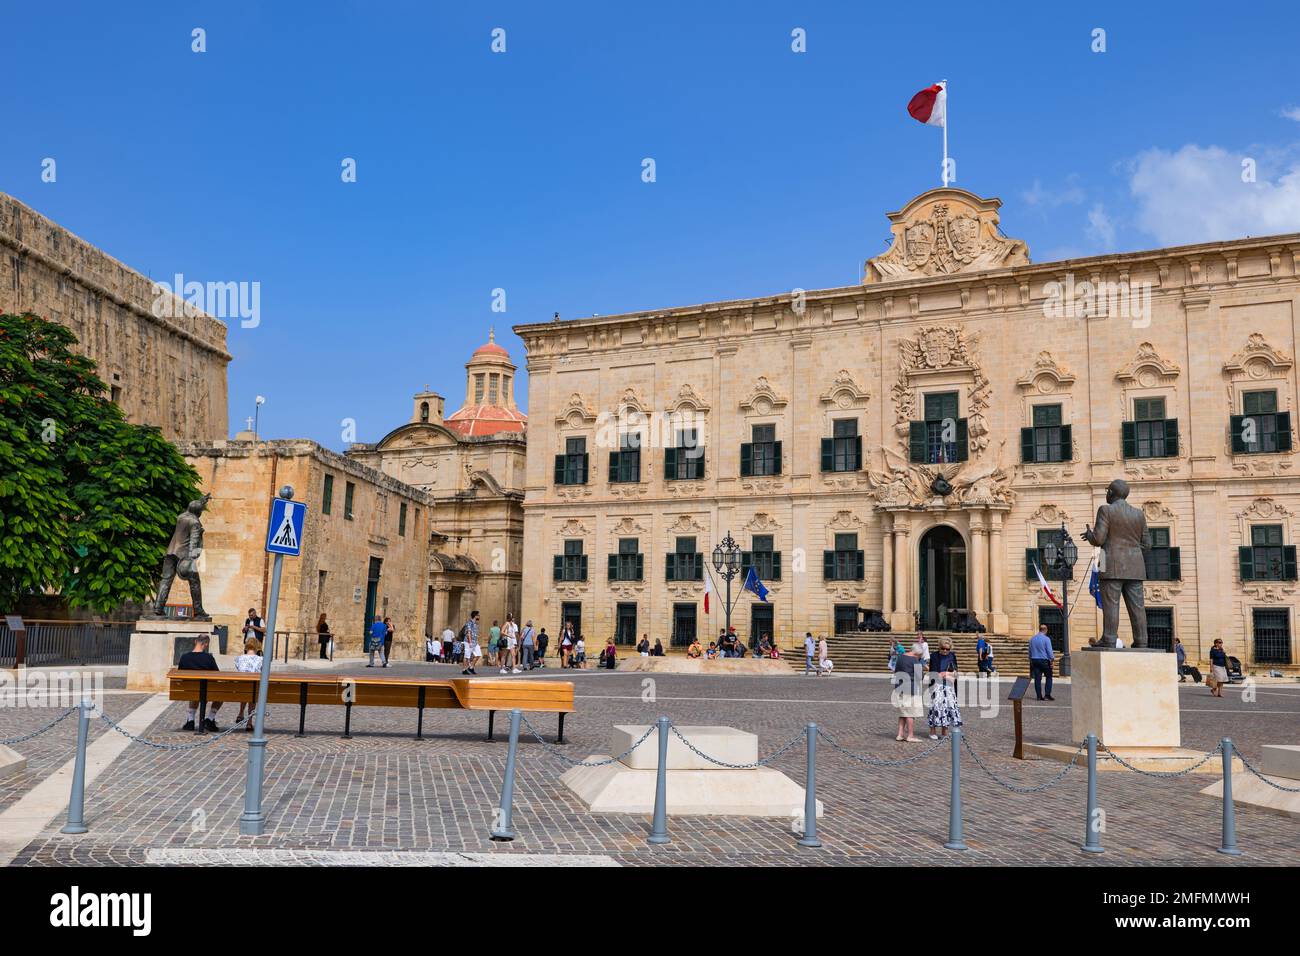 Valletta, Malte - 10 octobre 2019 - l'Auberge de Castille, site historique de la ville datant du 18th siècle, architecture baroque espagnole. Banque D'Images